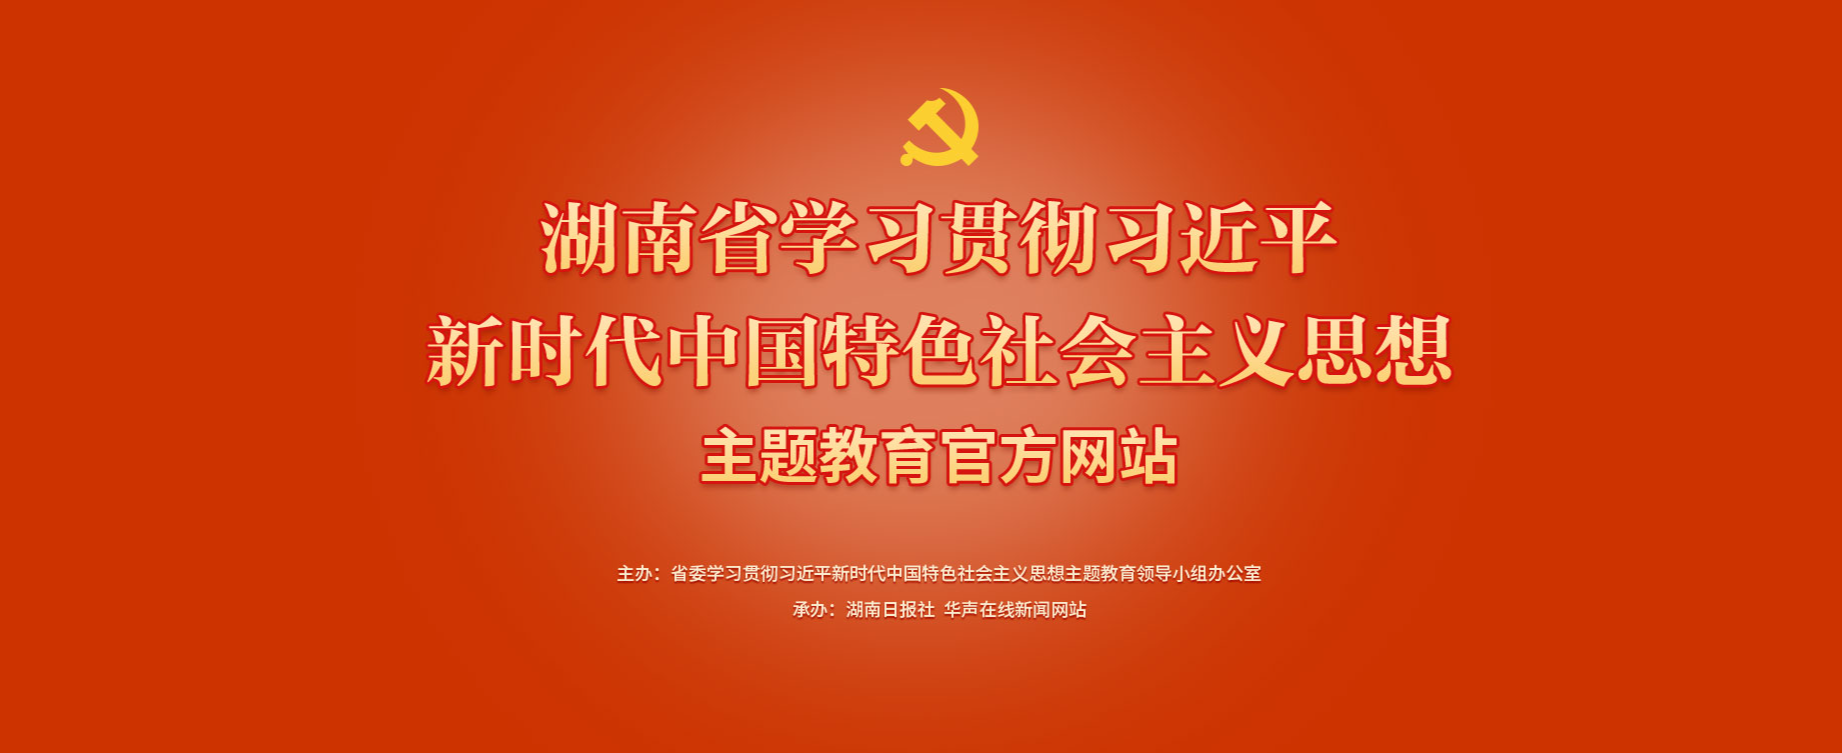 学习贯彻习近平新时代中国特色社会主义思想主题教育官方网站